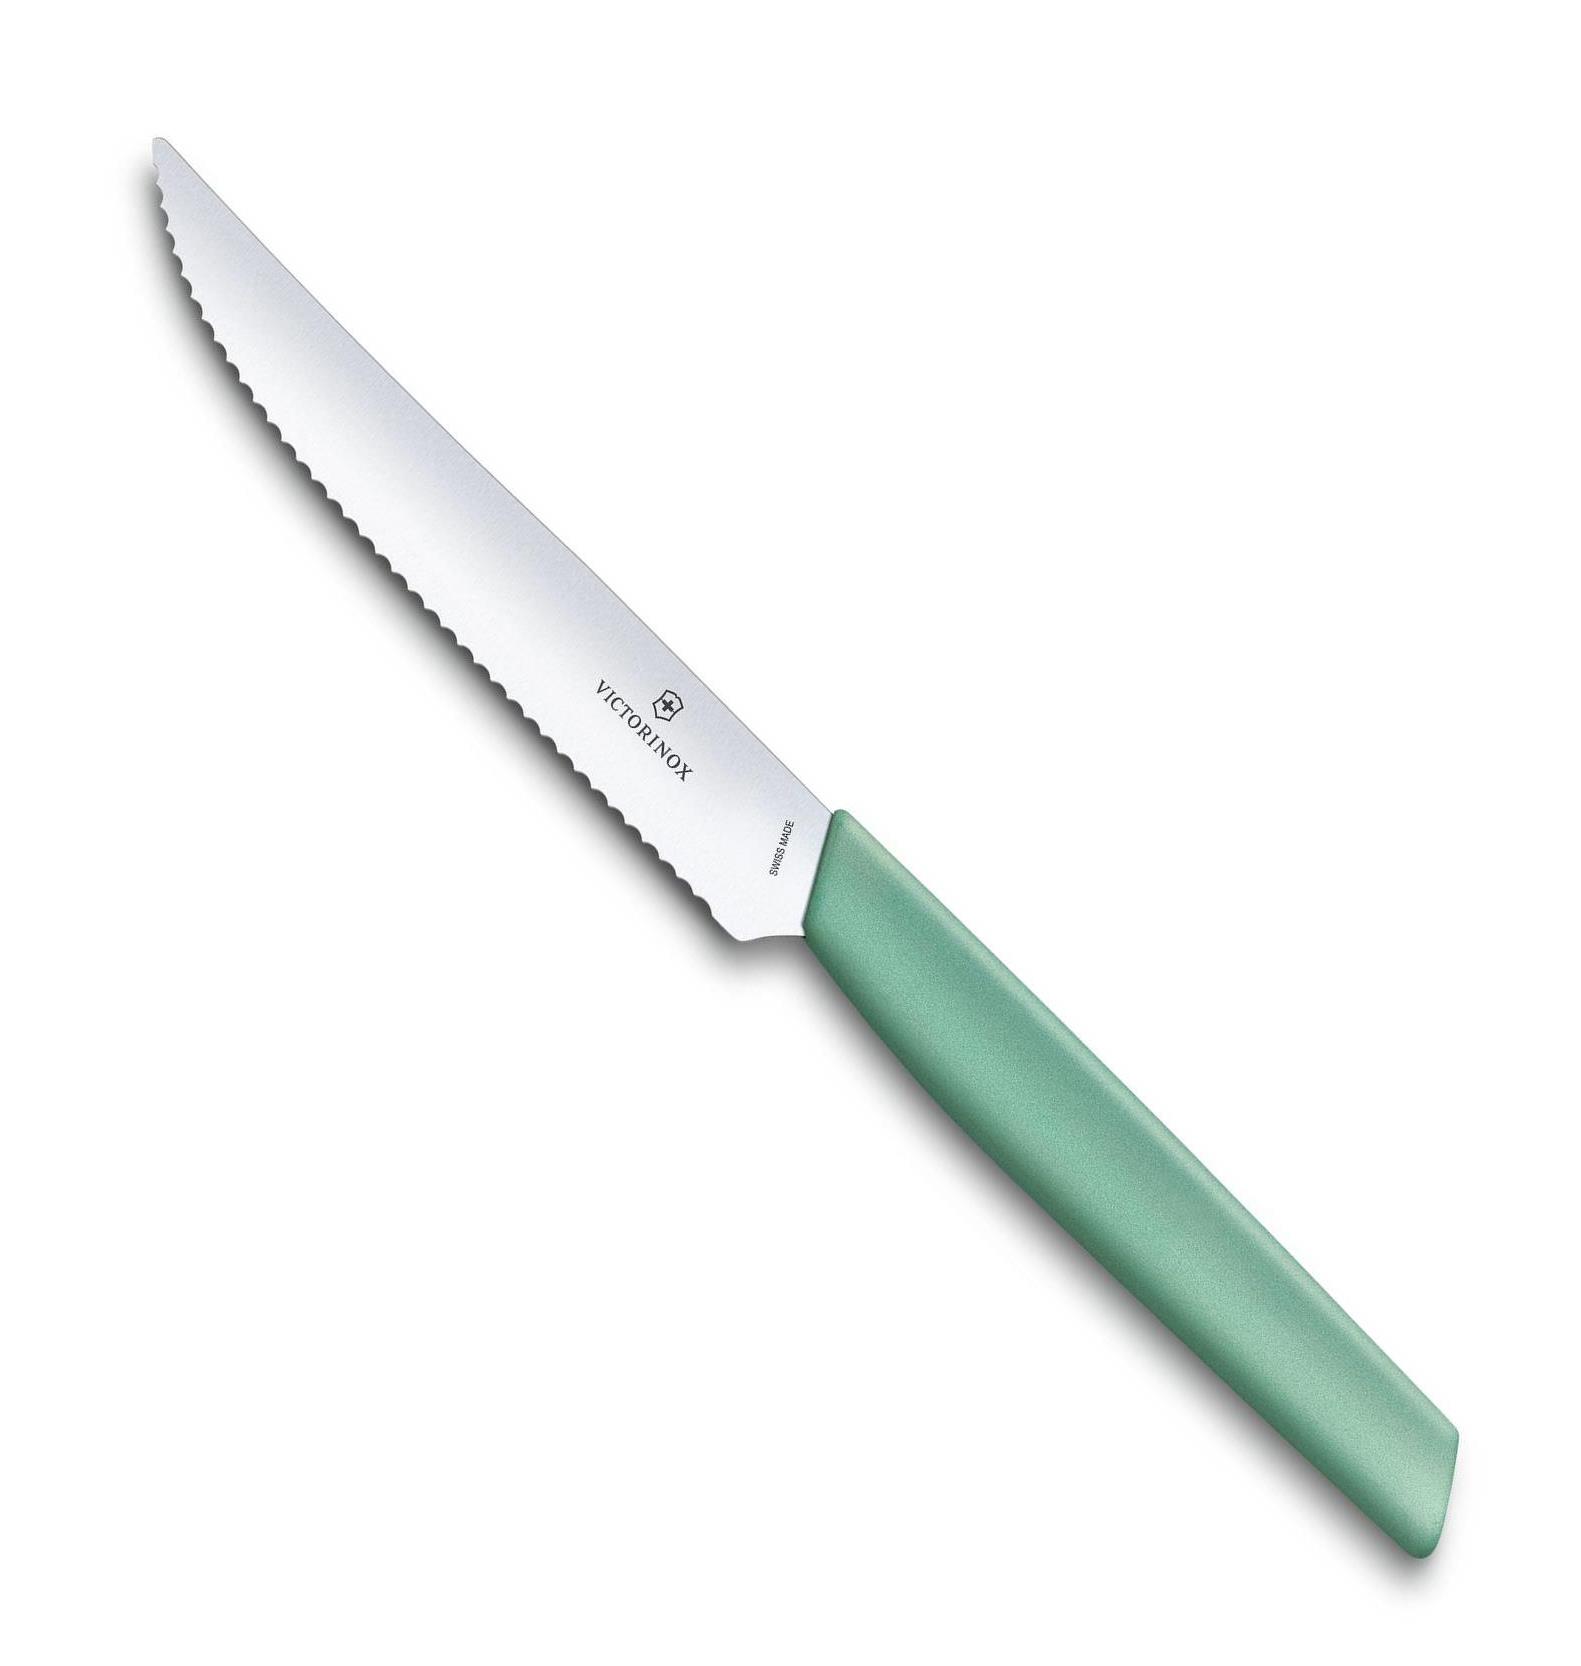 Steakový nůž 12 cm zelený SWISS MODERN - Victorinox